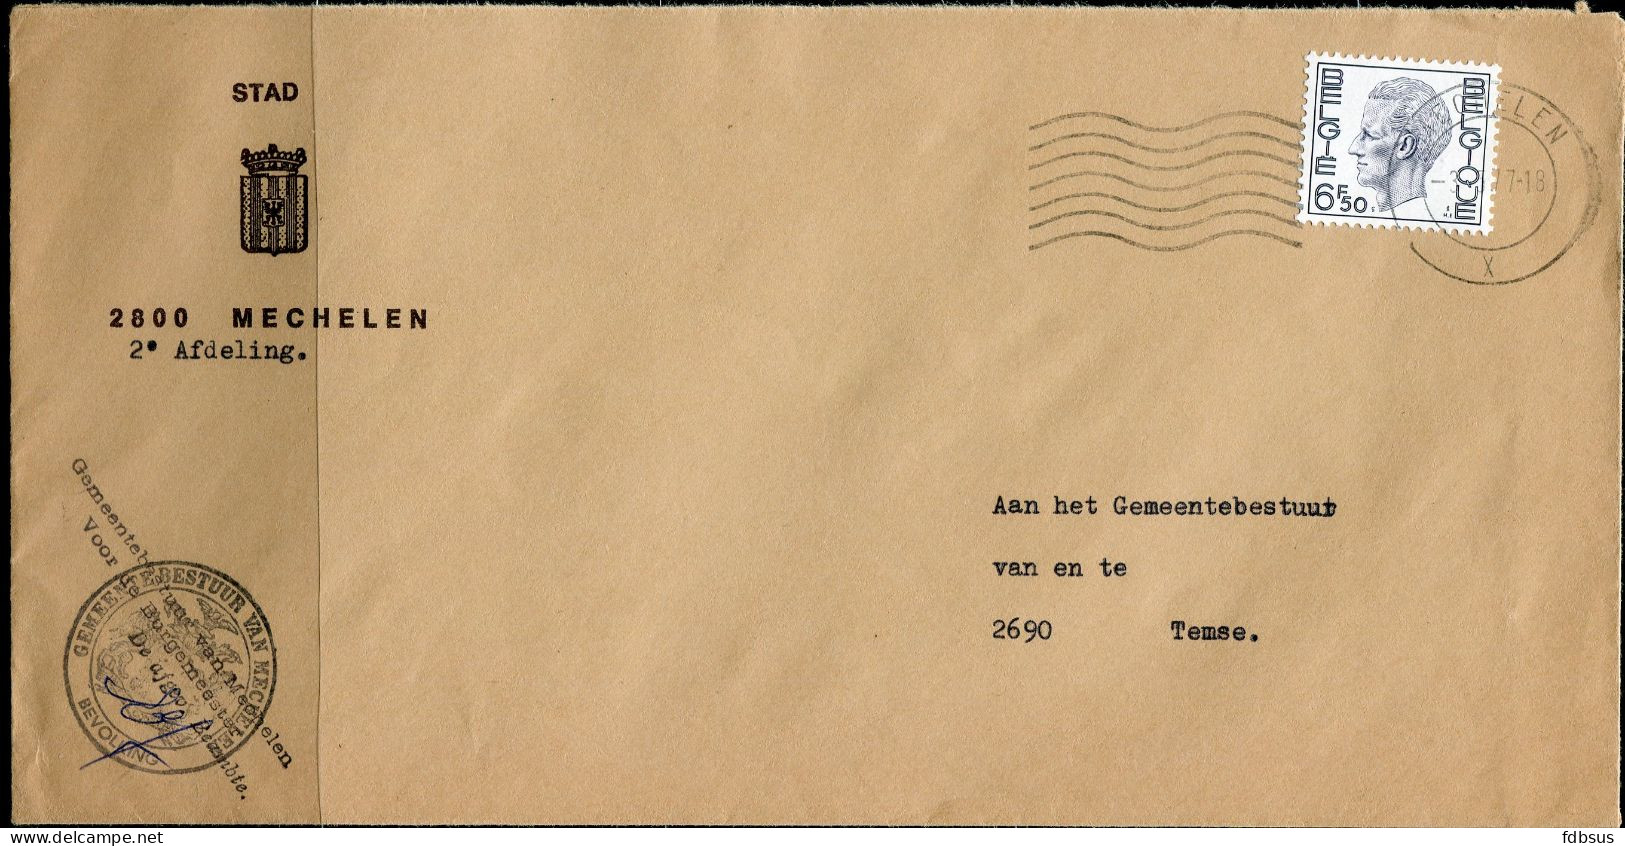 1977 Enveloppe Van Het Gemeentebestuur STAD MECHELEN 2800 2e Afdeling Naar Temse - Gefr. 6.50Fr Elstrom - Lettres & Documents